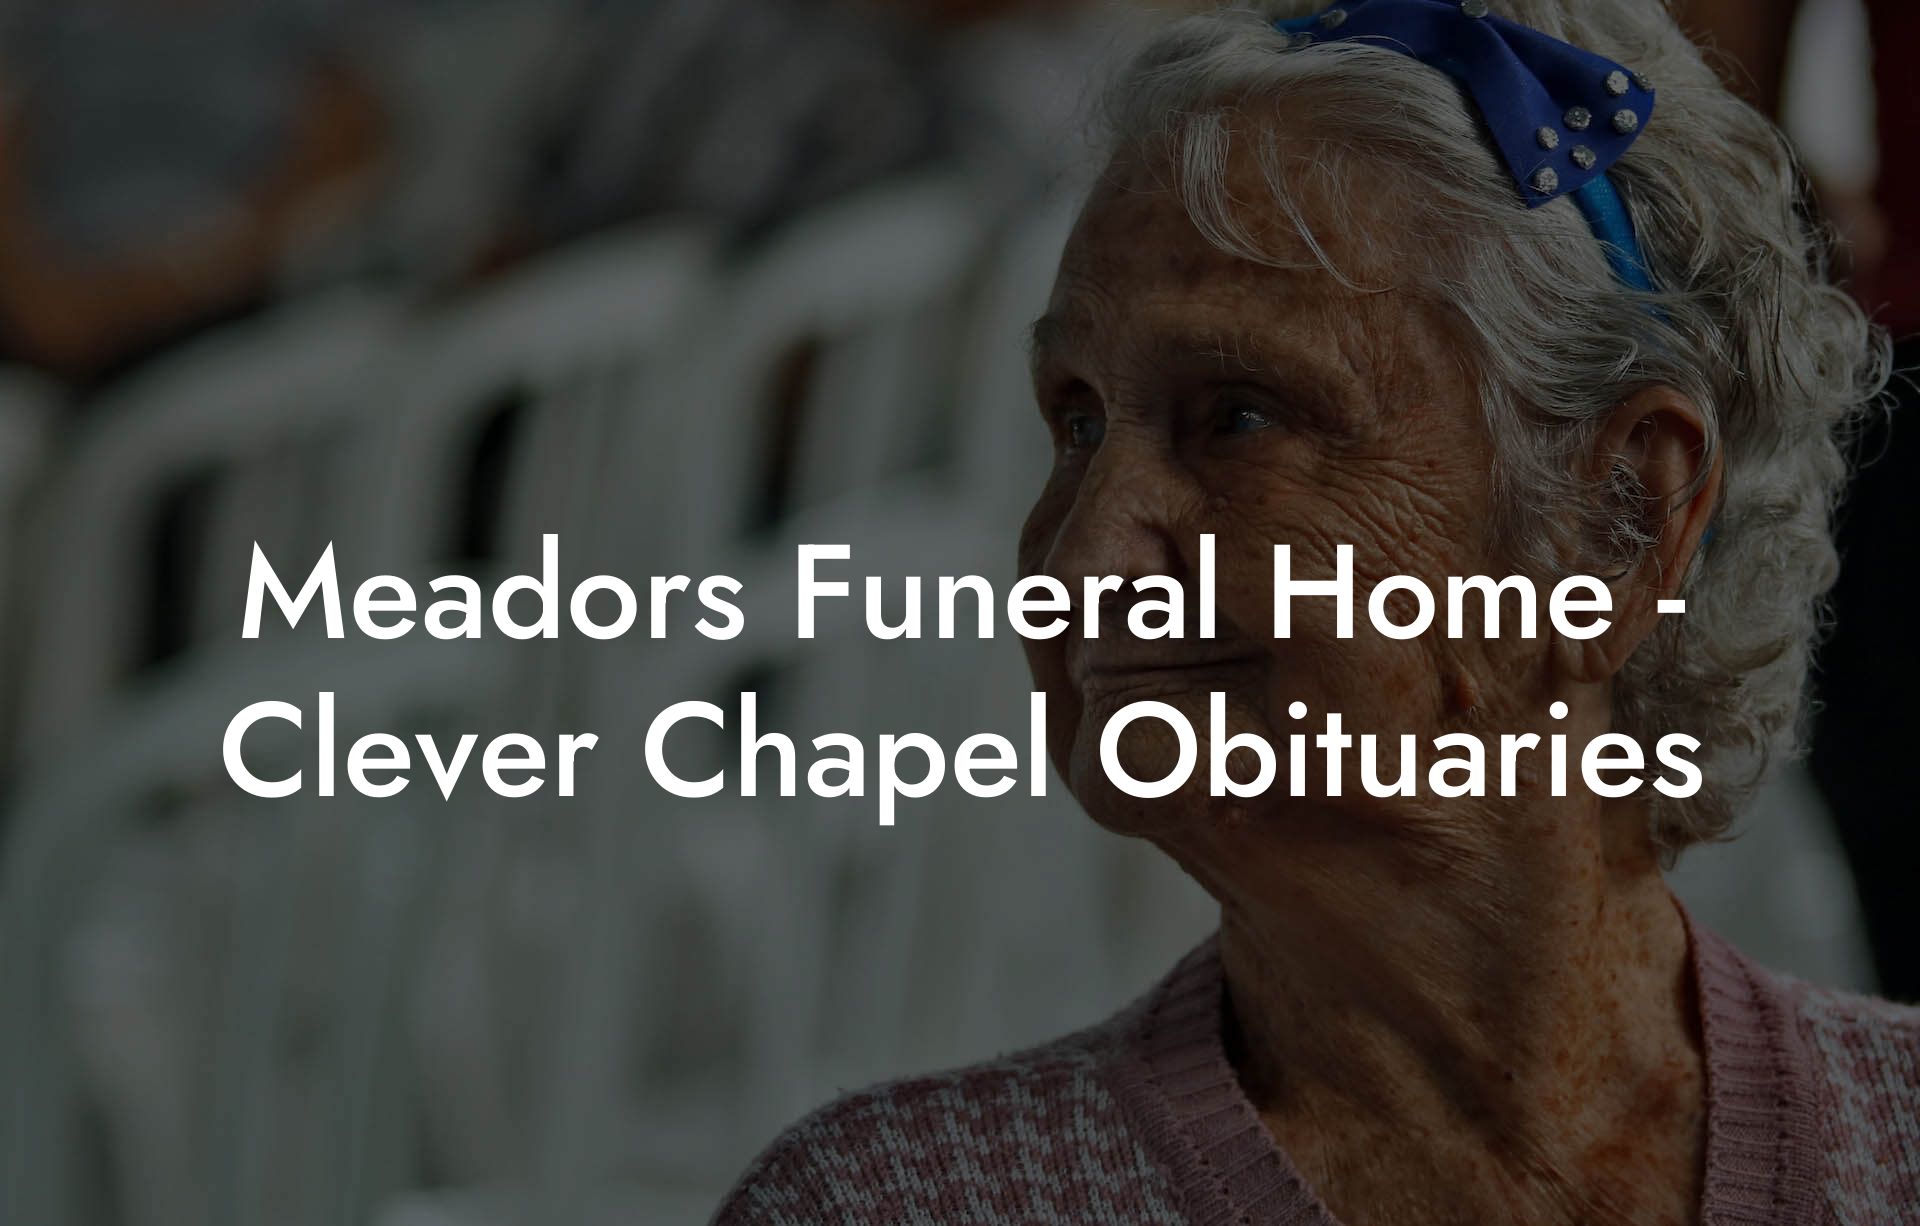 Meadors Funeral Home - Clever Chapel Obituaries